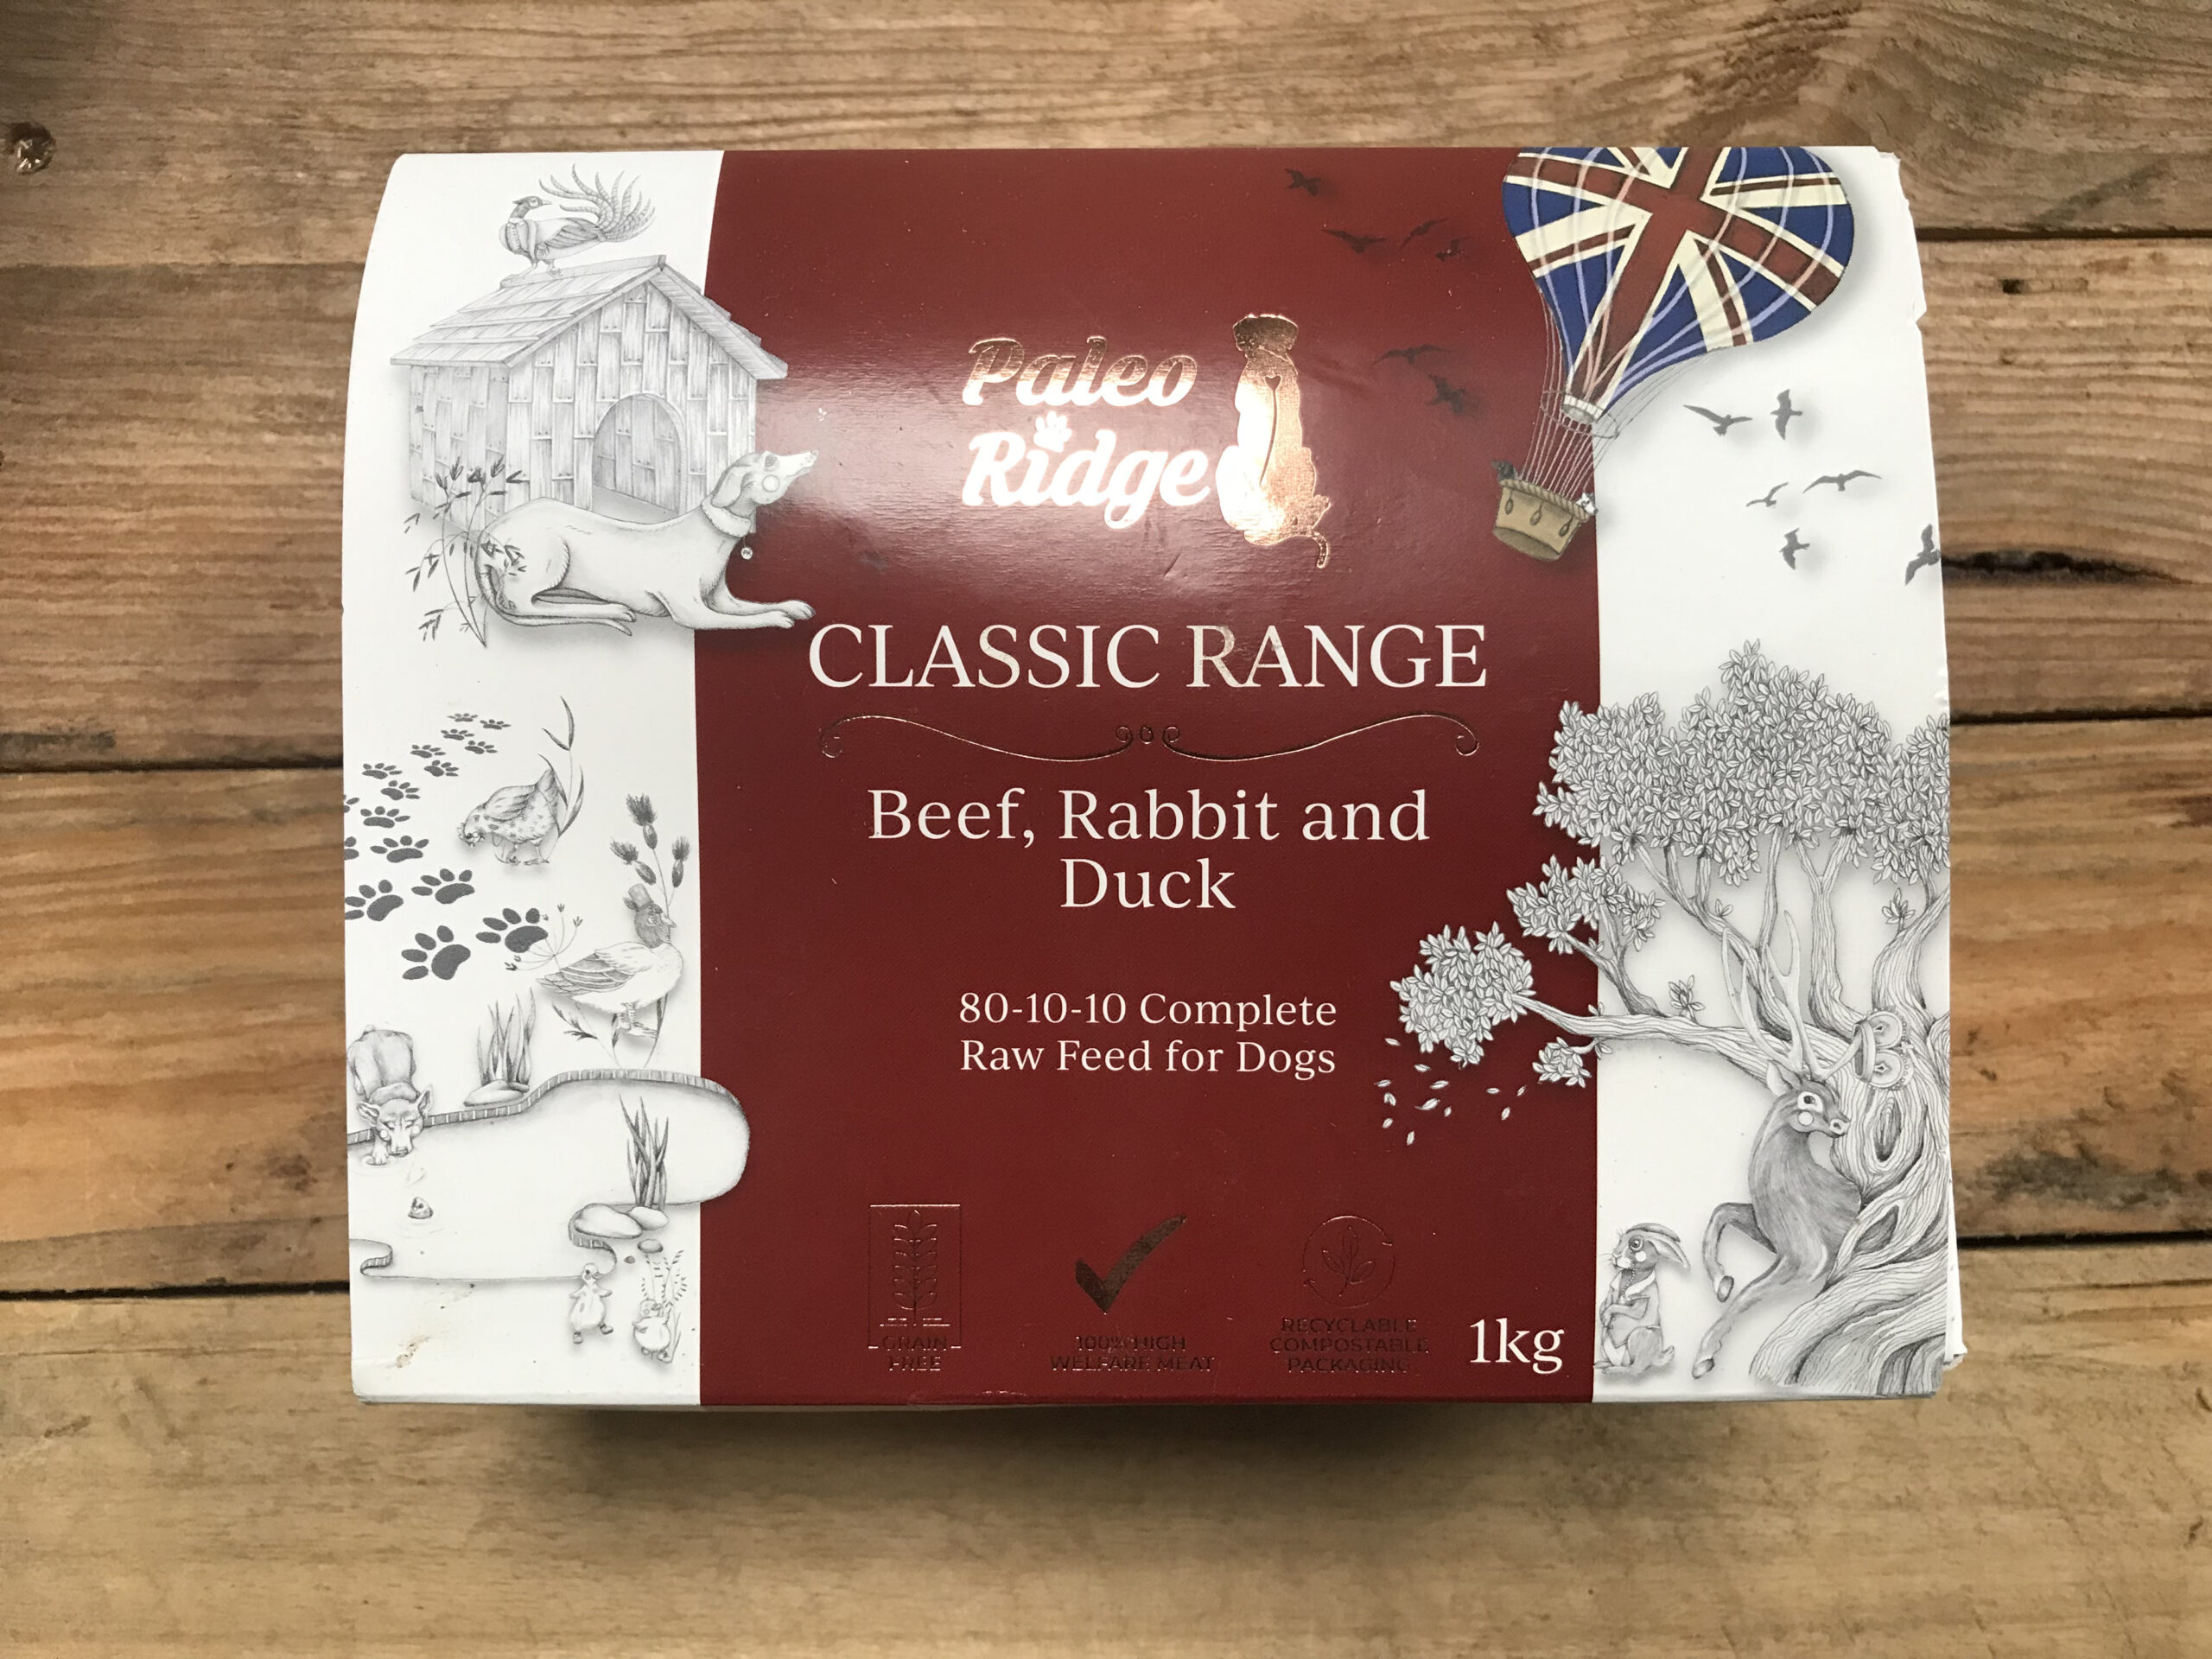 Paleo Ridge Beef, Rabbit & Duck – 1kg